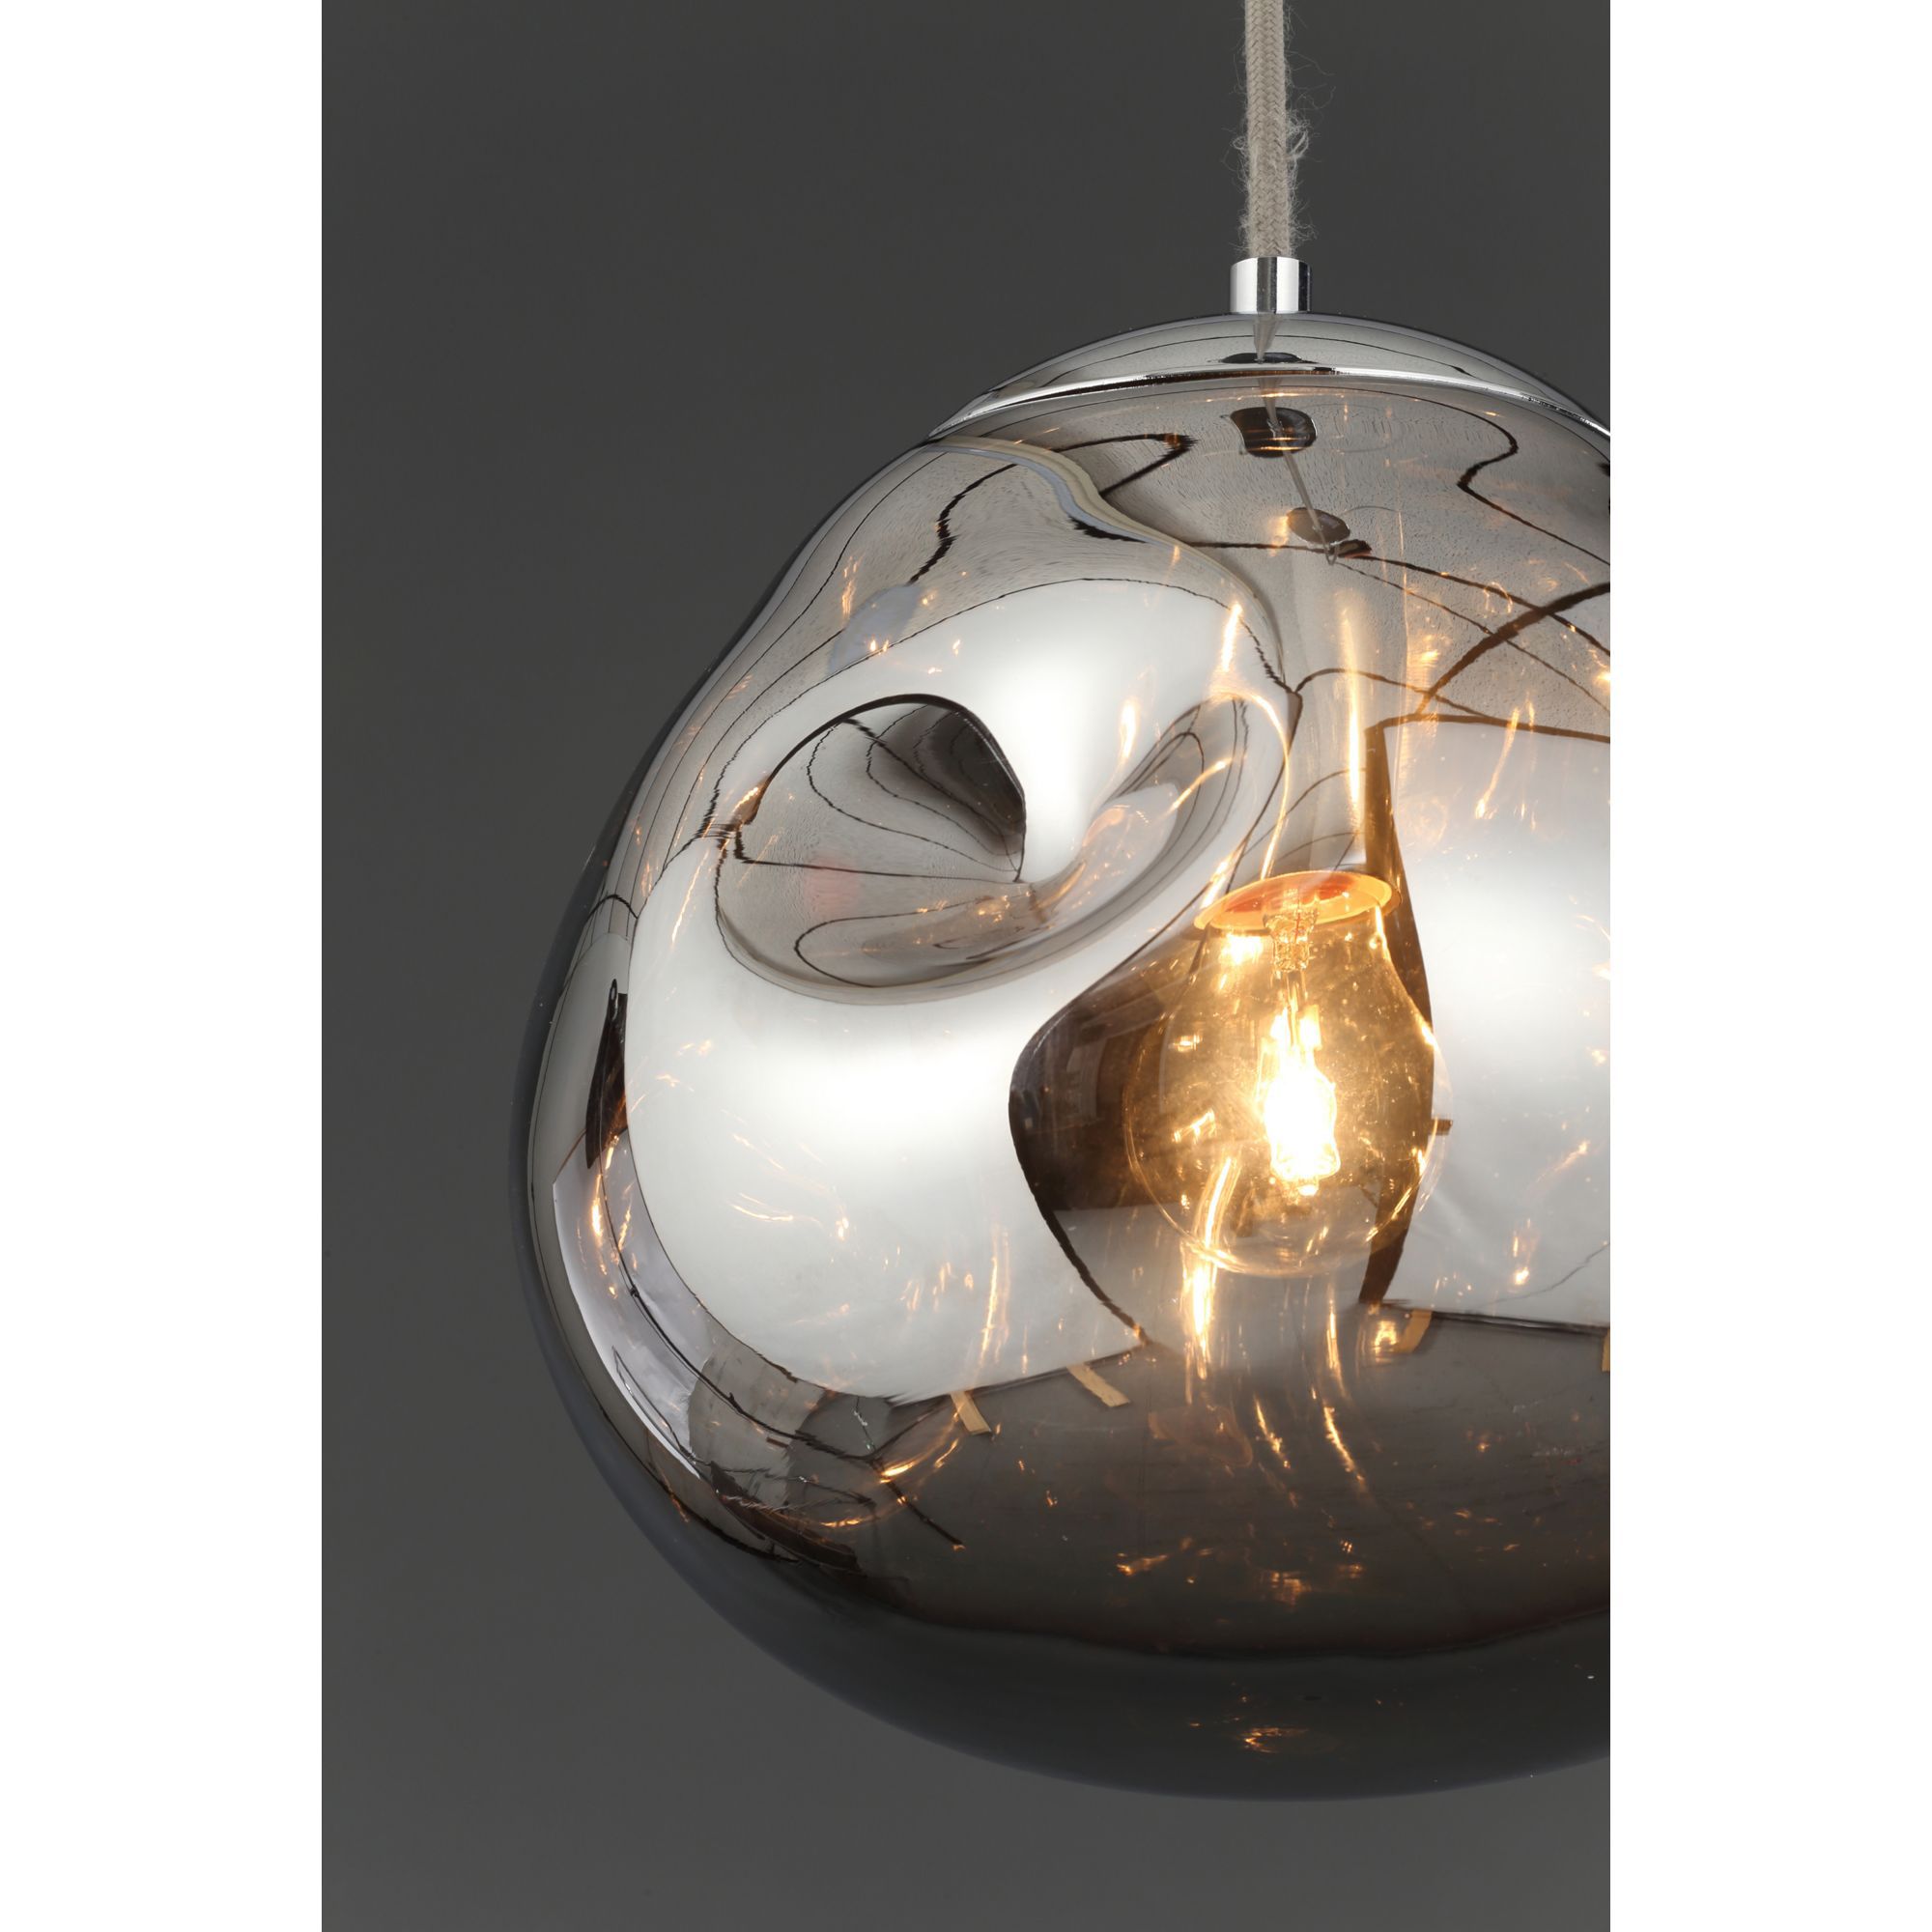 Inlight Watson Pendant Glass & metal Chrome effect Ceiling light